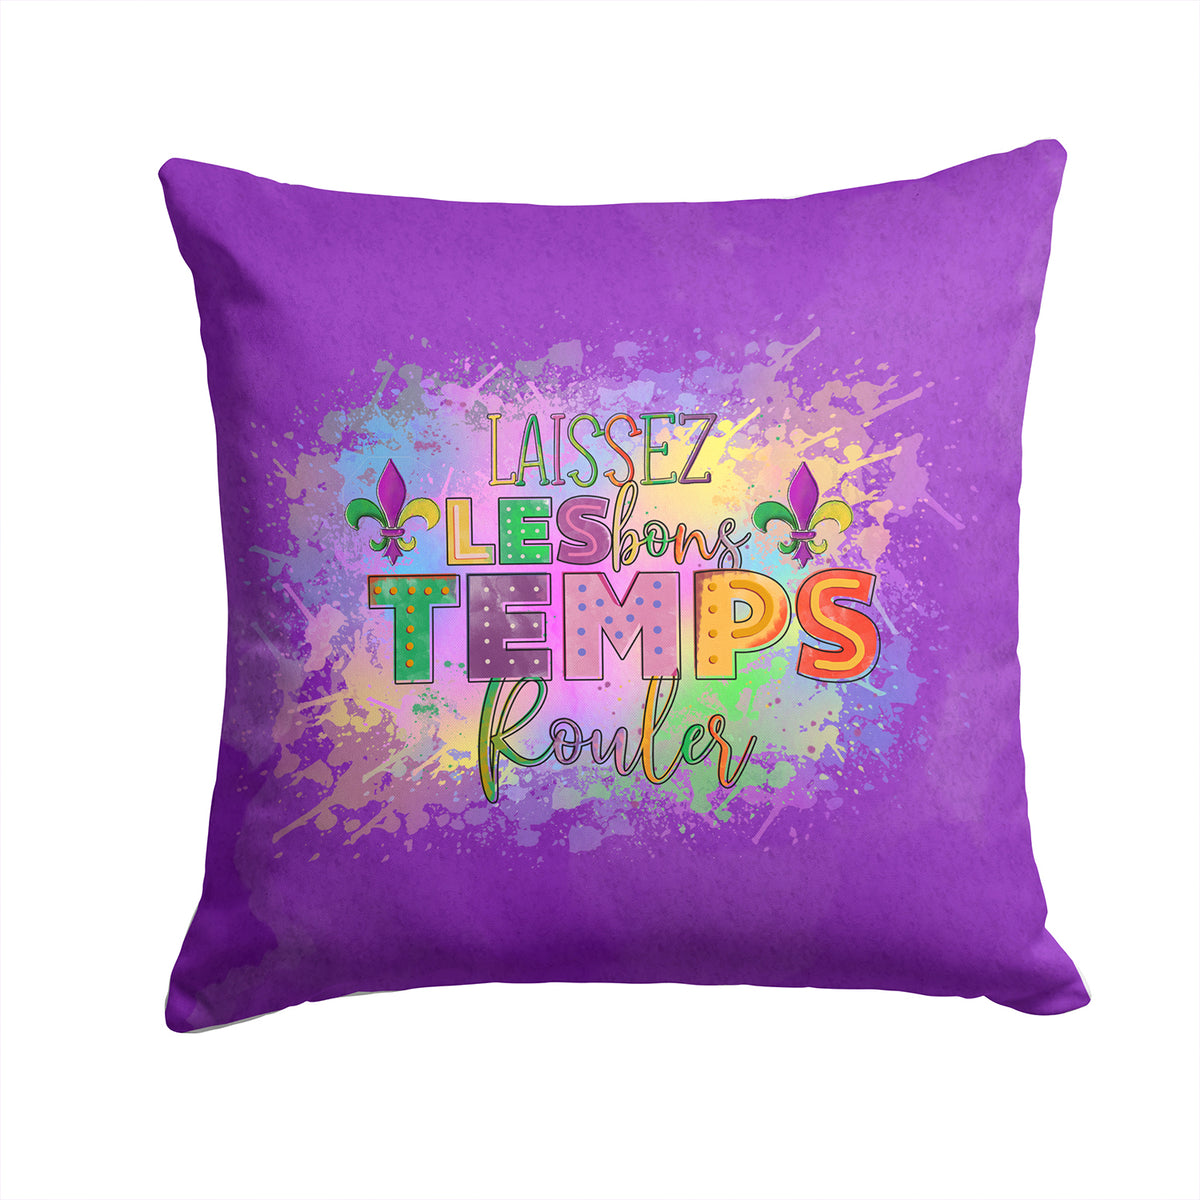 Buy this Laissex Les bons Temps Rouler Mardi Gras Fabric Decorative Pillow